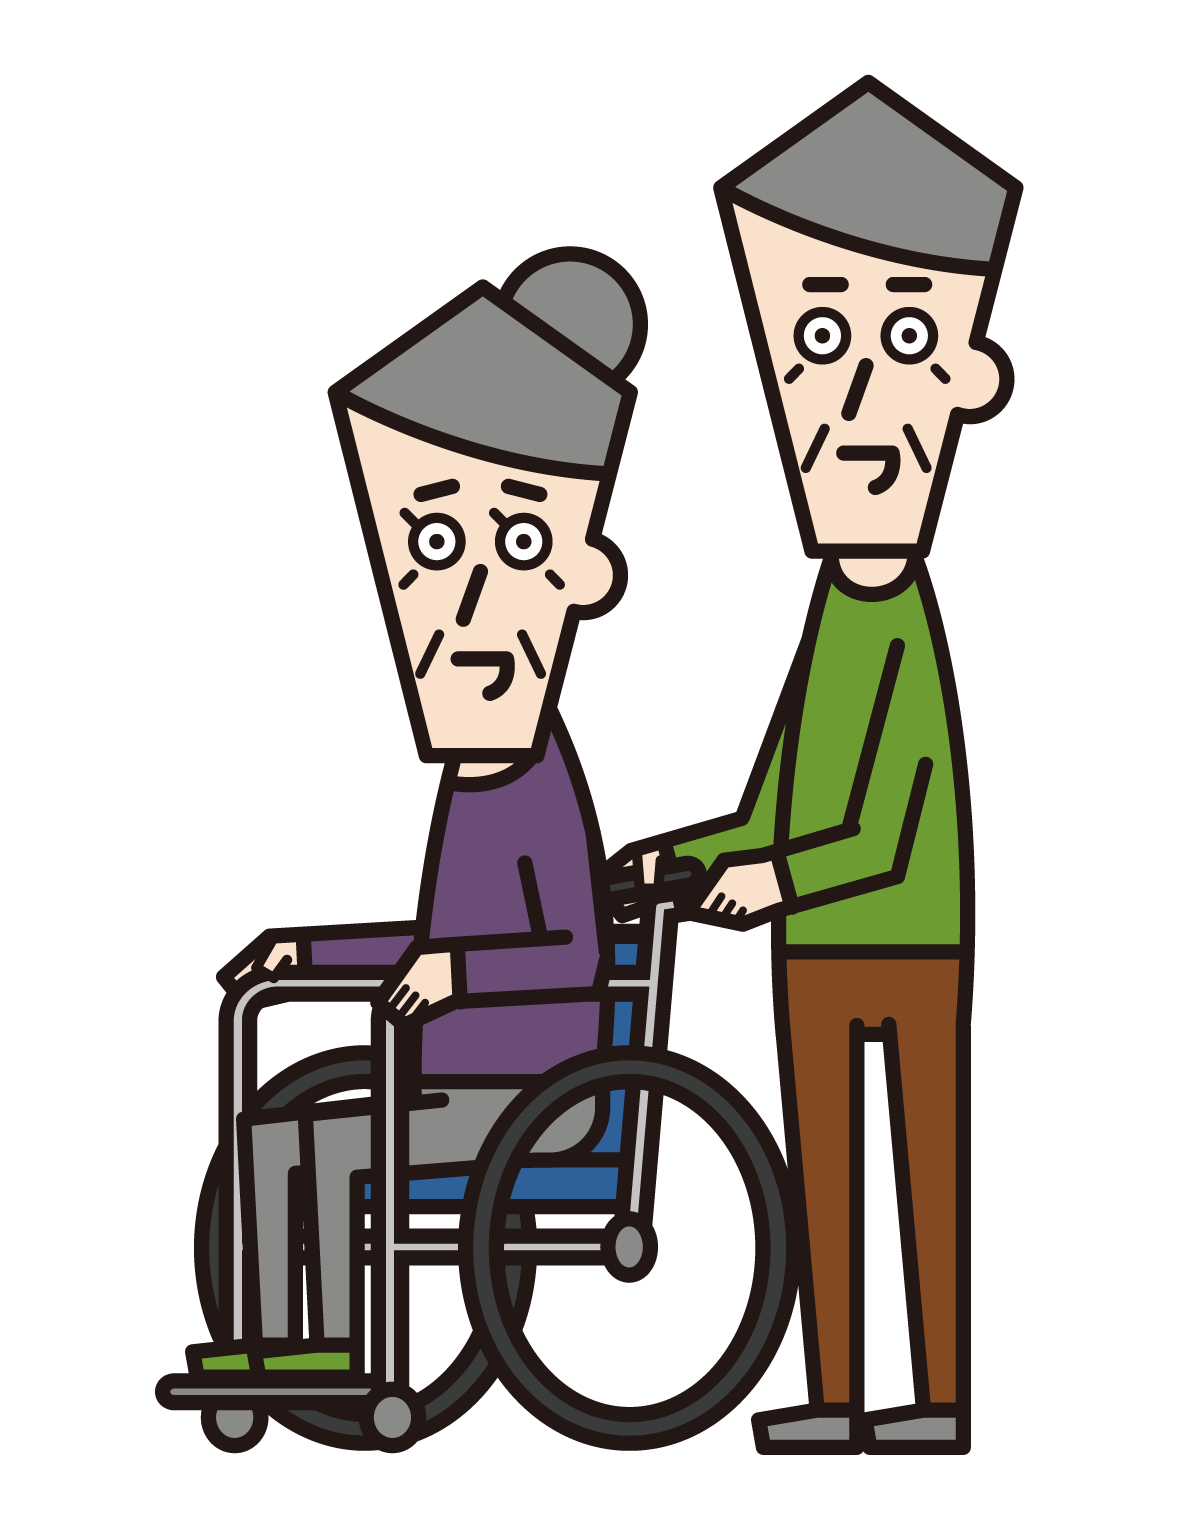 車椅子に乗っている人（おじいさん）と押す人（おばあさん）のイラスト